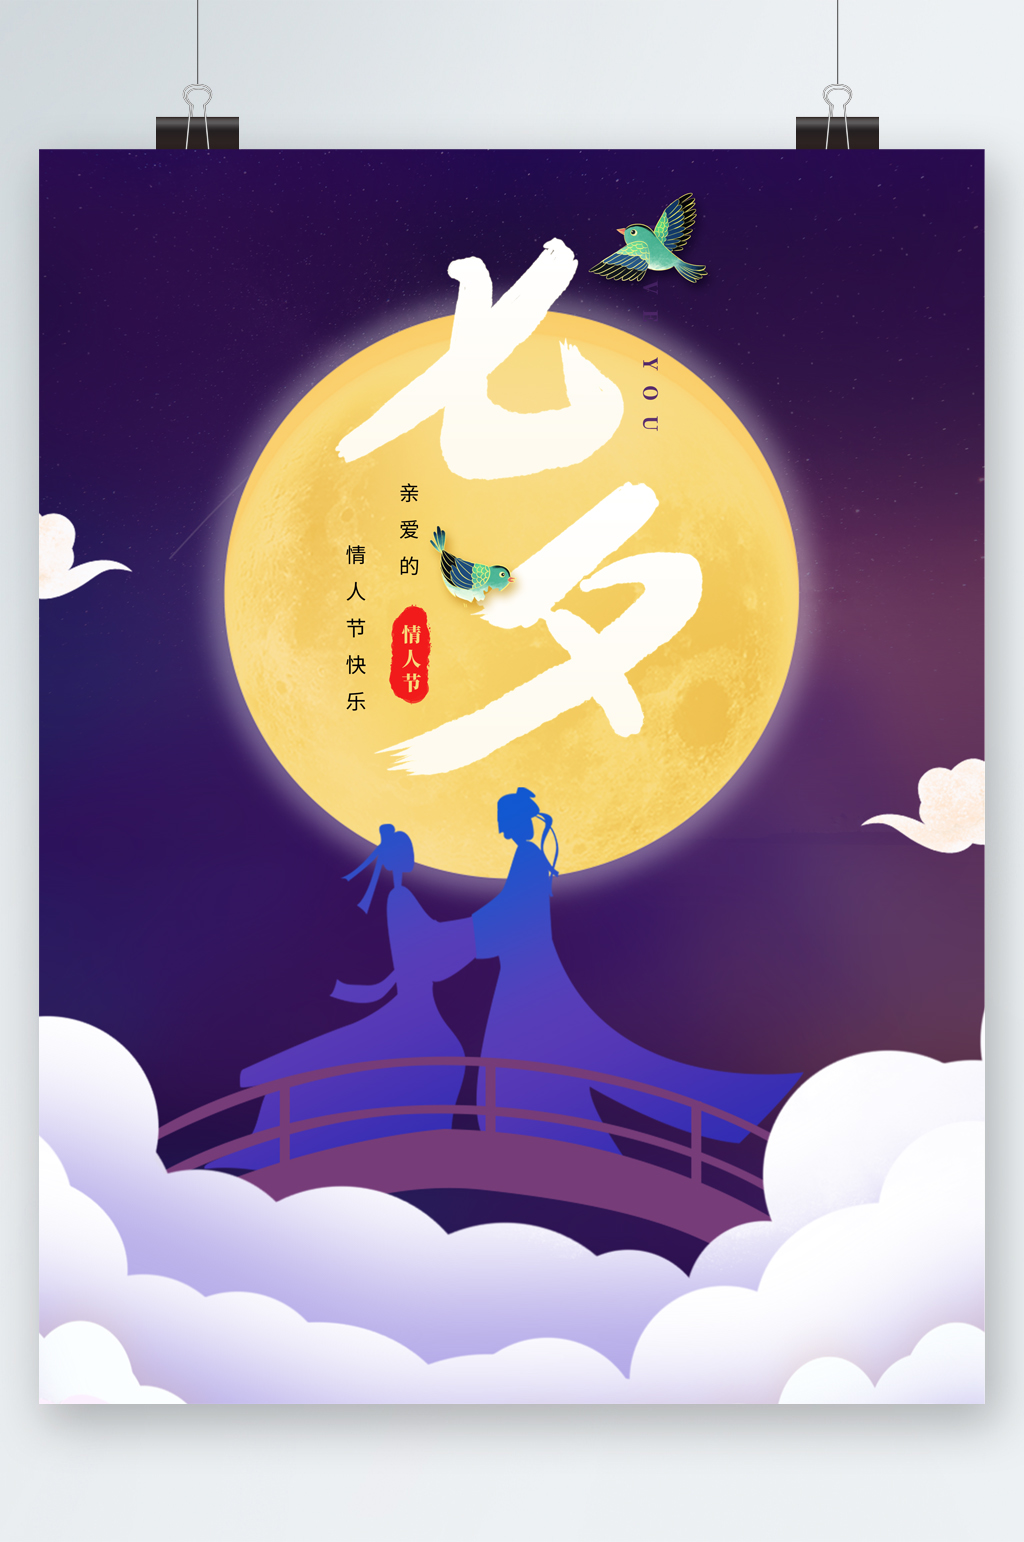 众图网独家提供传统节日七夕插画海报素材免费下载,本作品是由图图